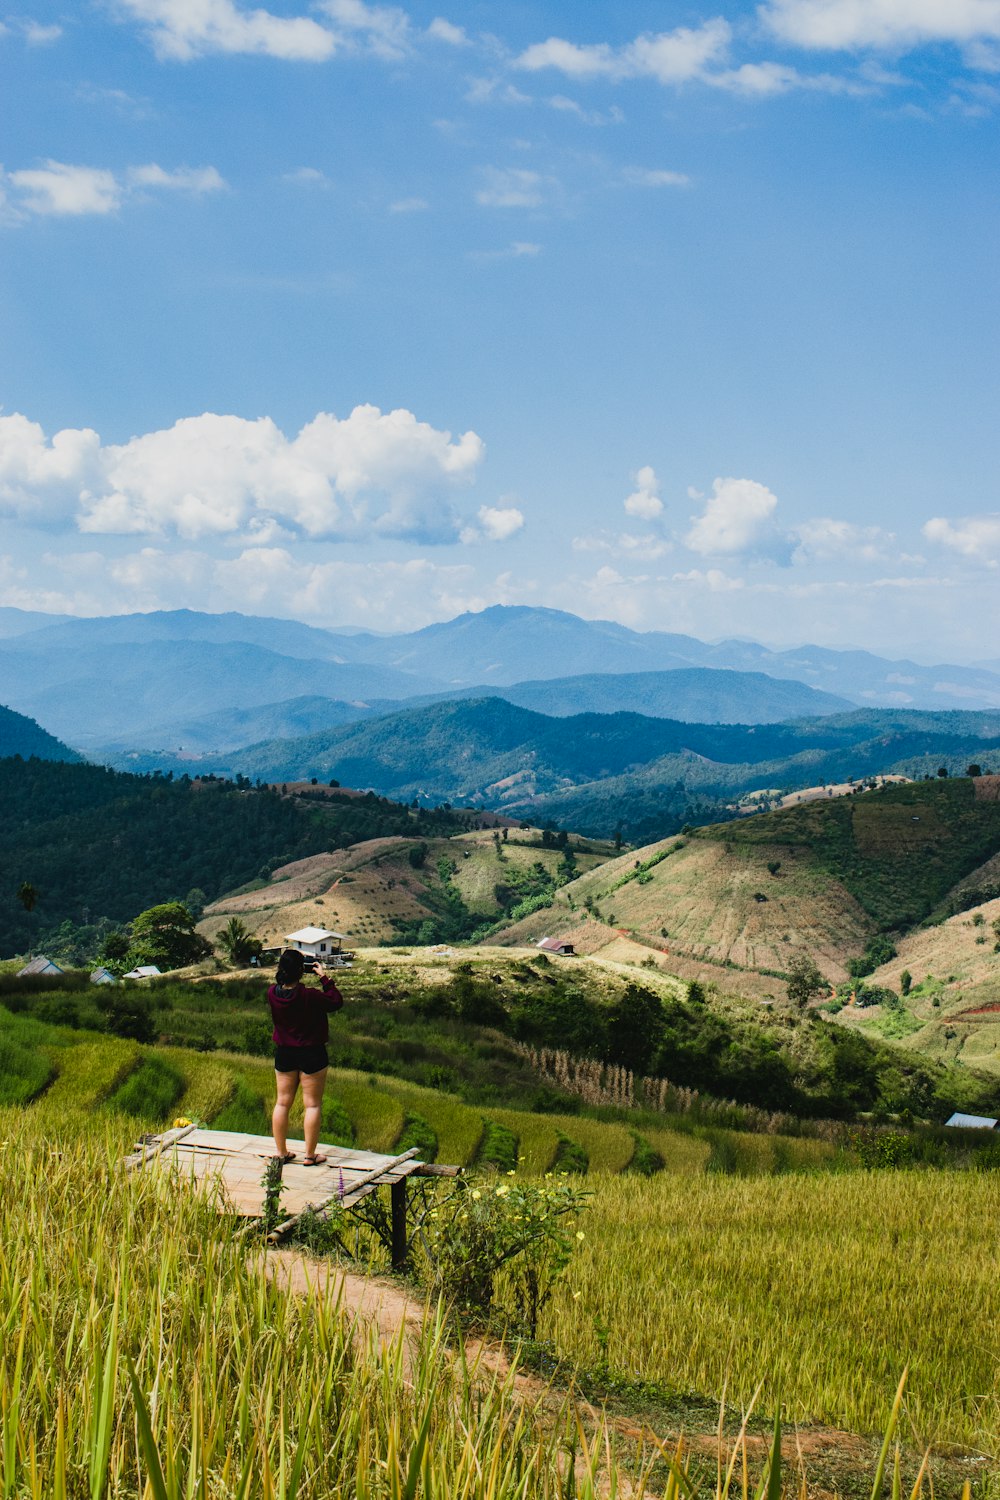 Una persona parada en una repisa con vistas a un valle con montañas en el fondo